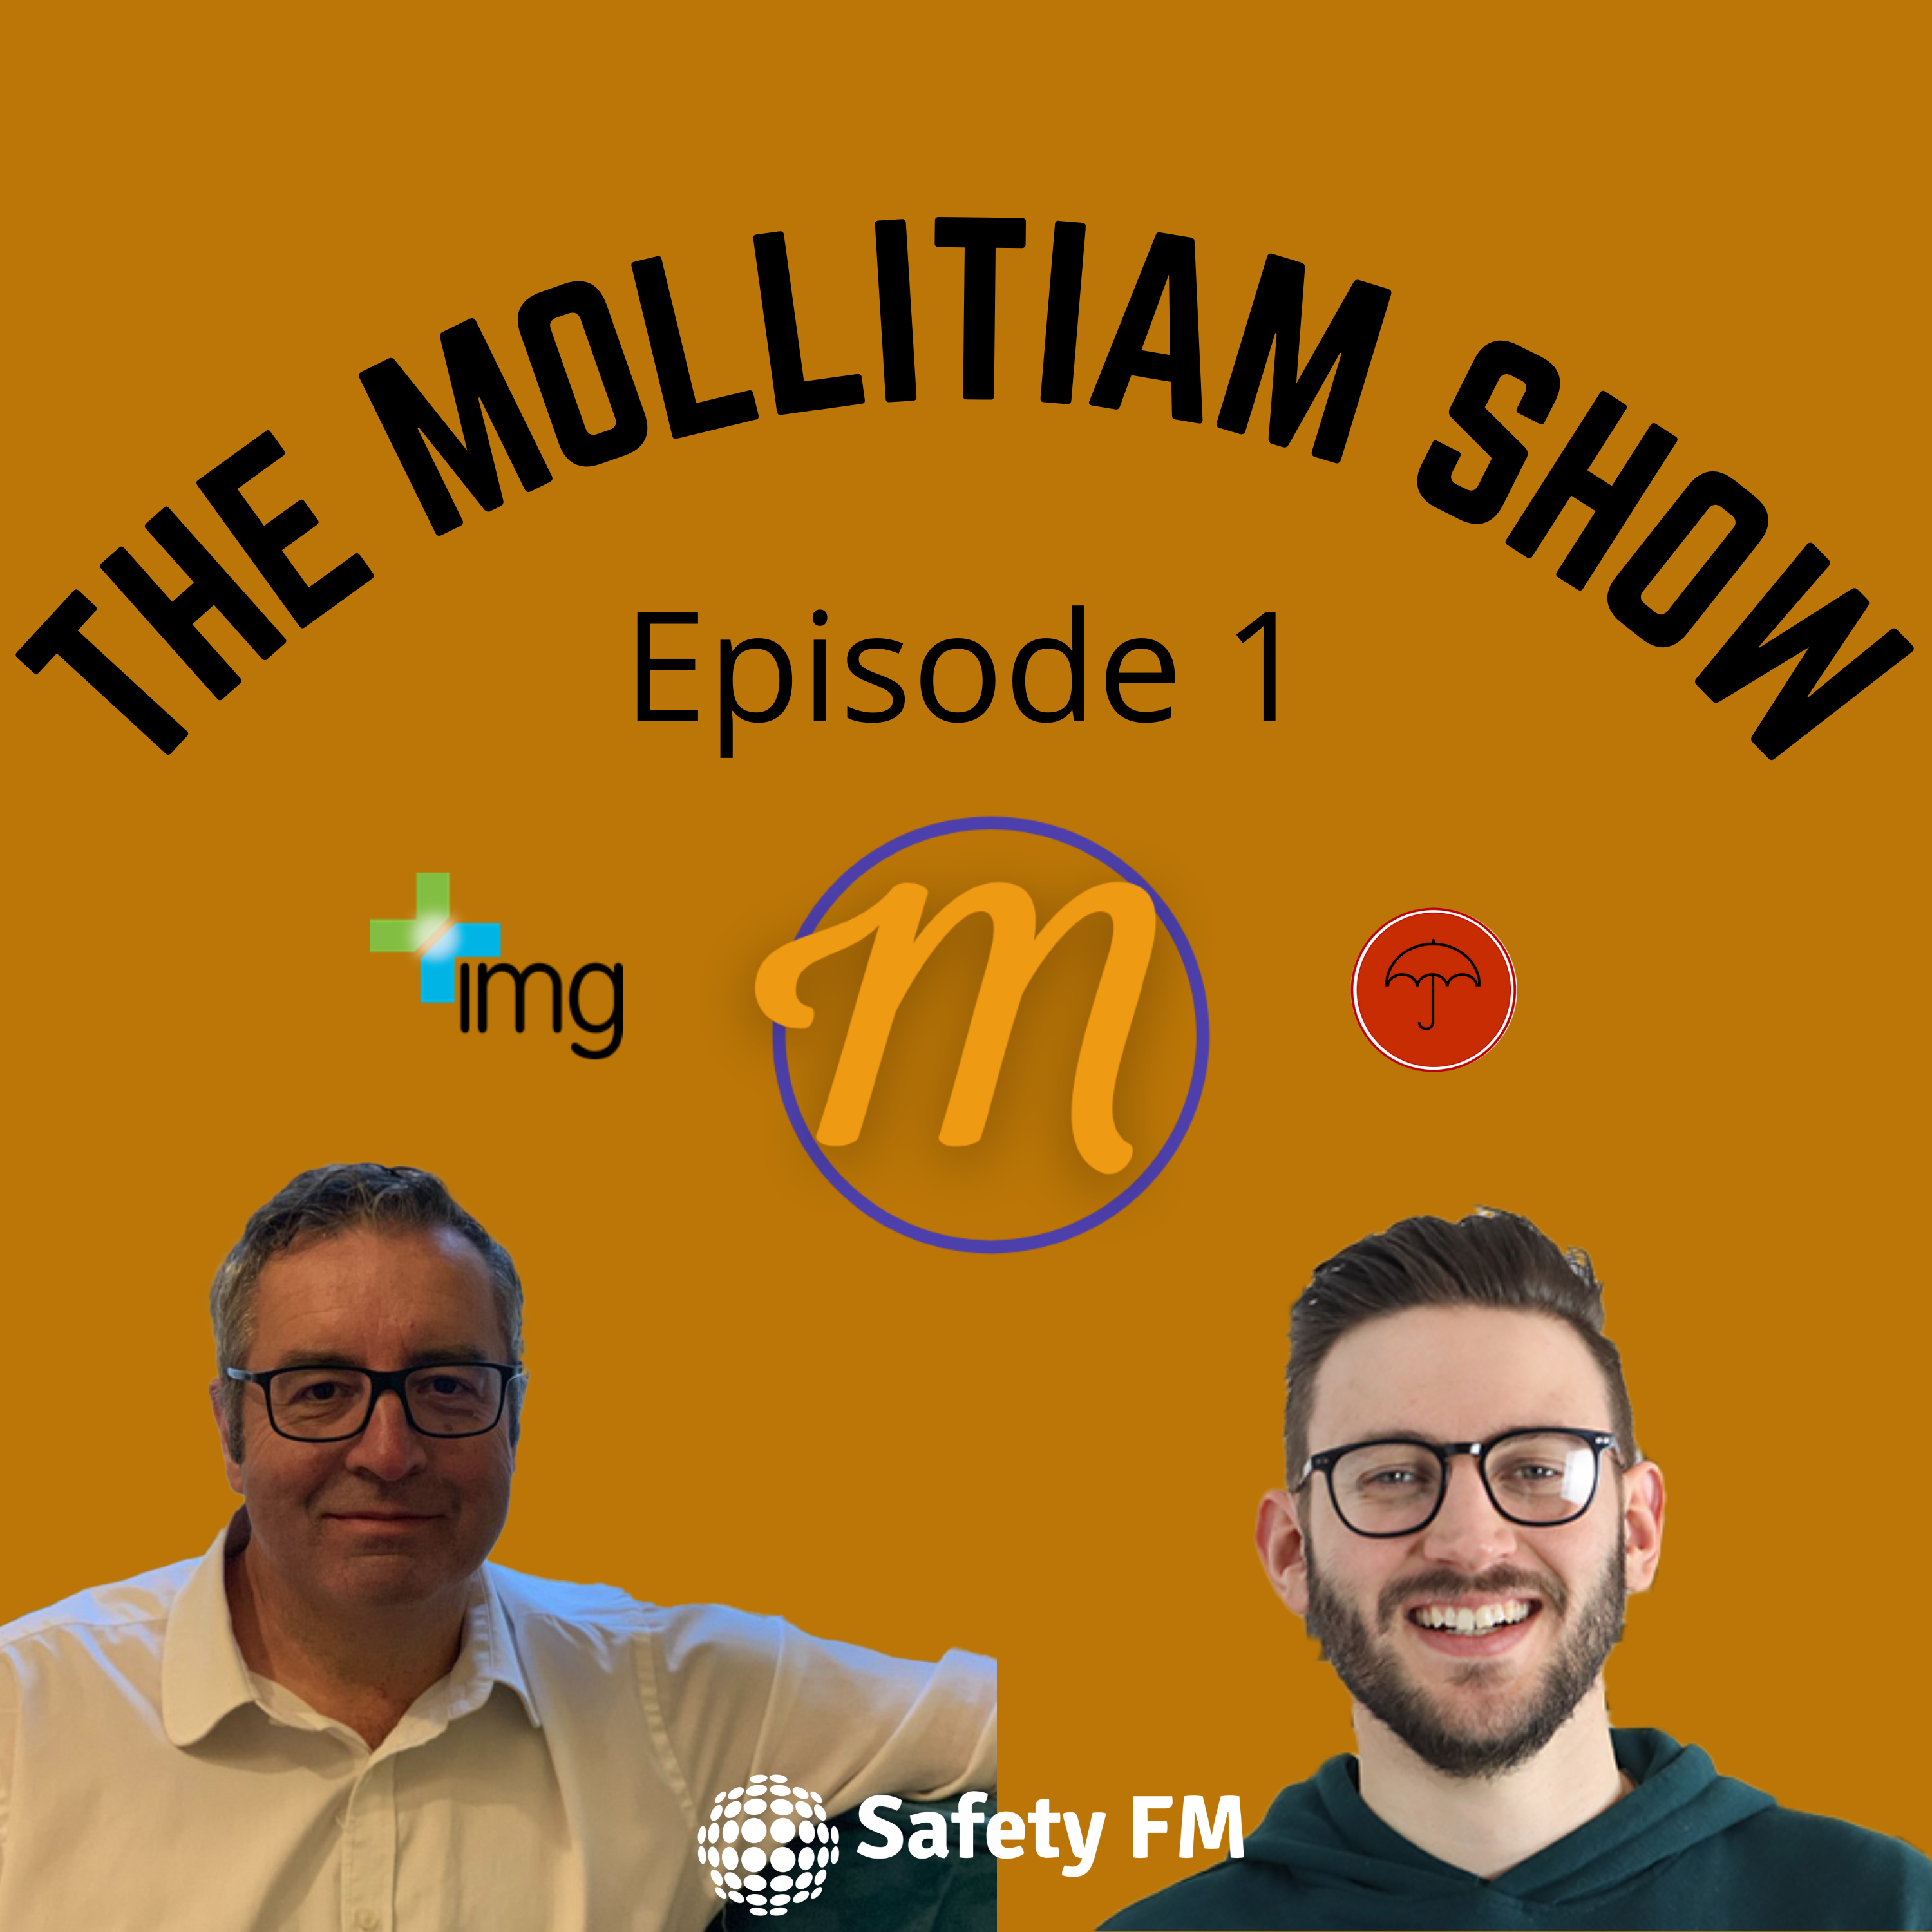 The Mollitiam Show - Episode 1